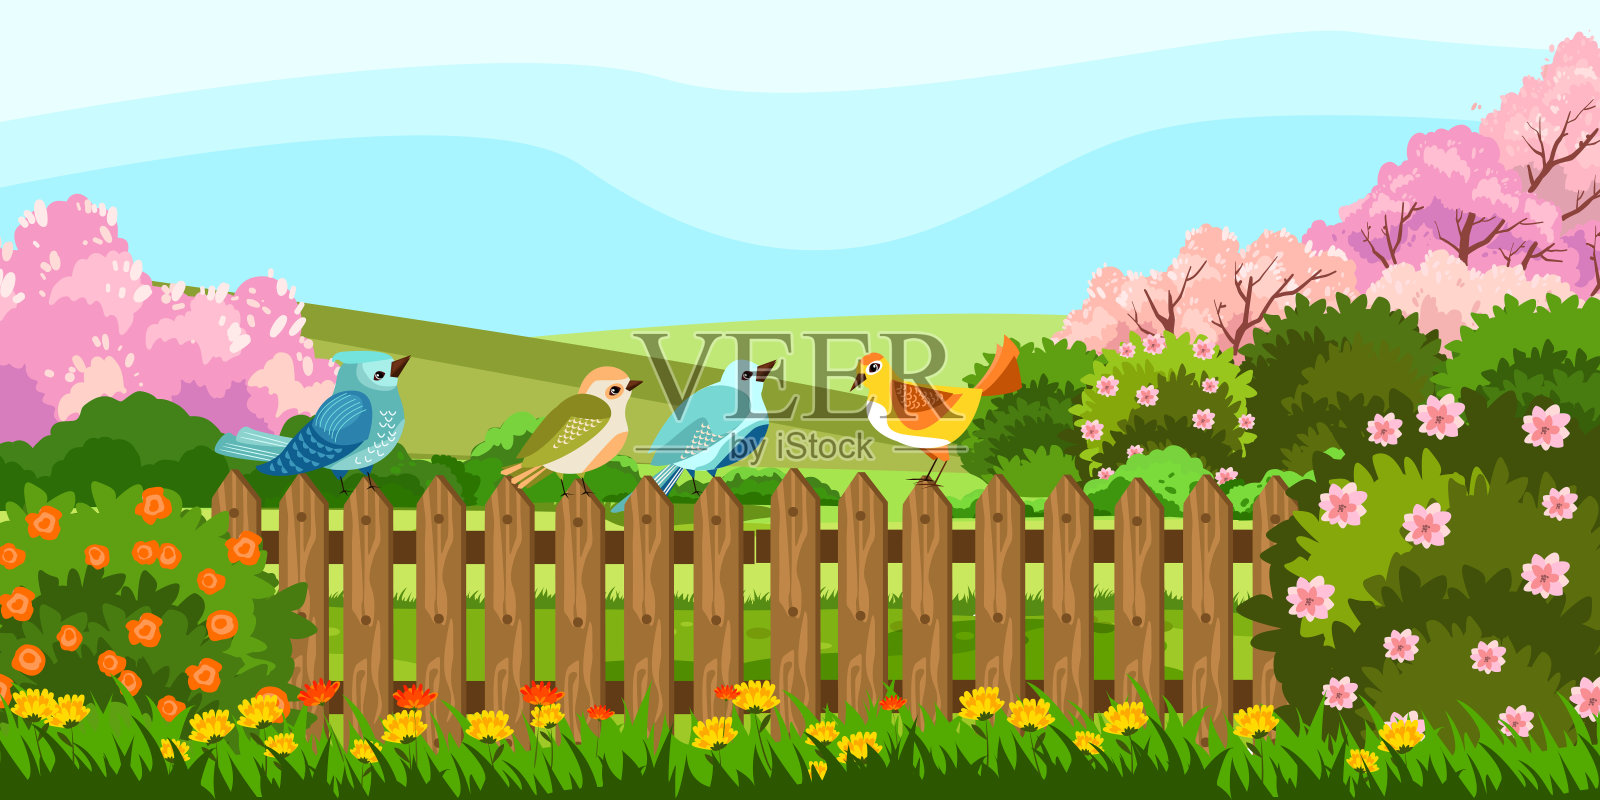 矢量股票插图与可爱的五颜六色的鸟坐在花园篱笆上。春天的田园后院有盛开的树木，灌木和鲜花。插画图片素材